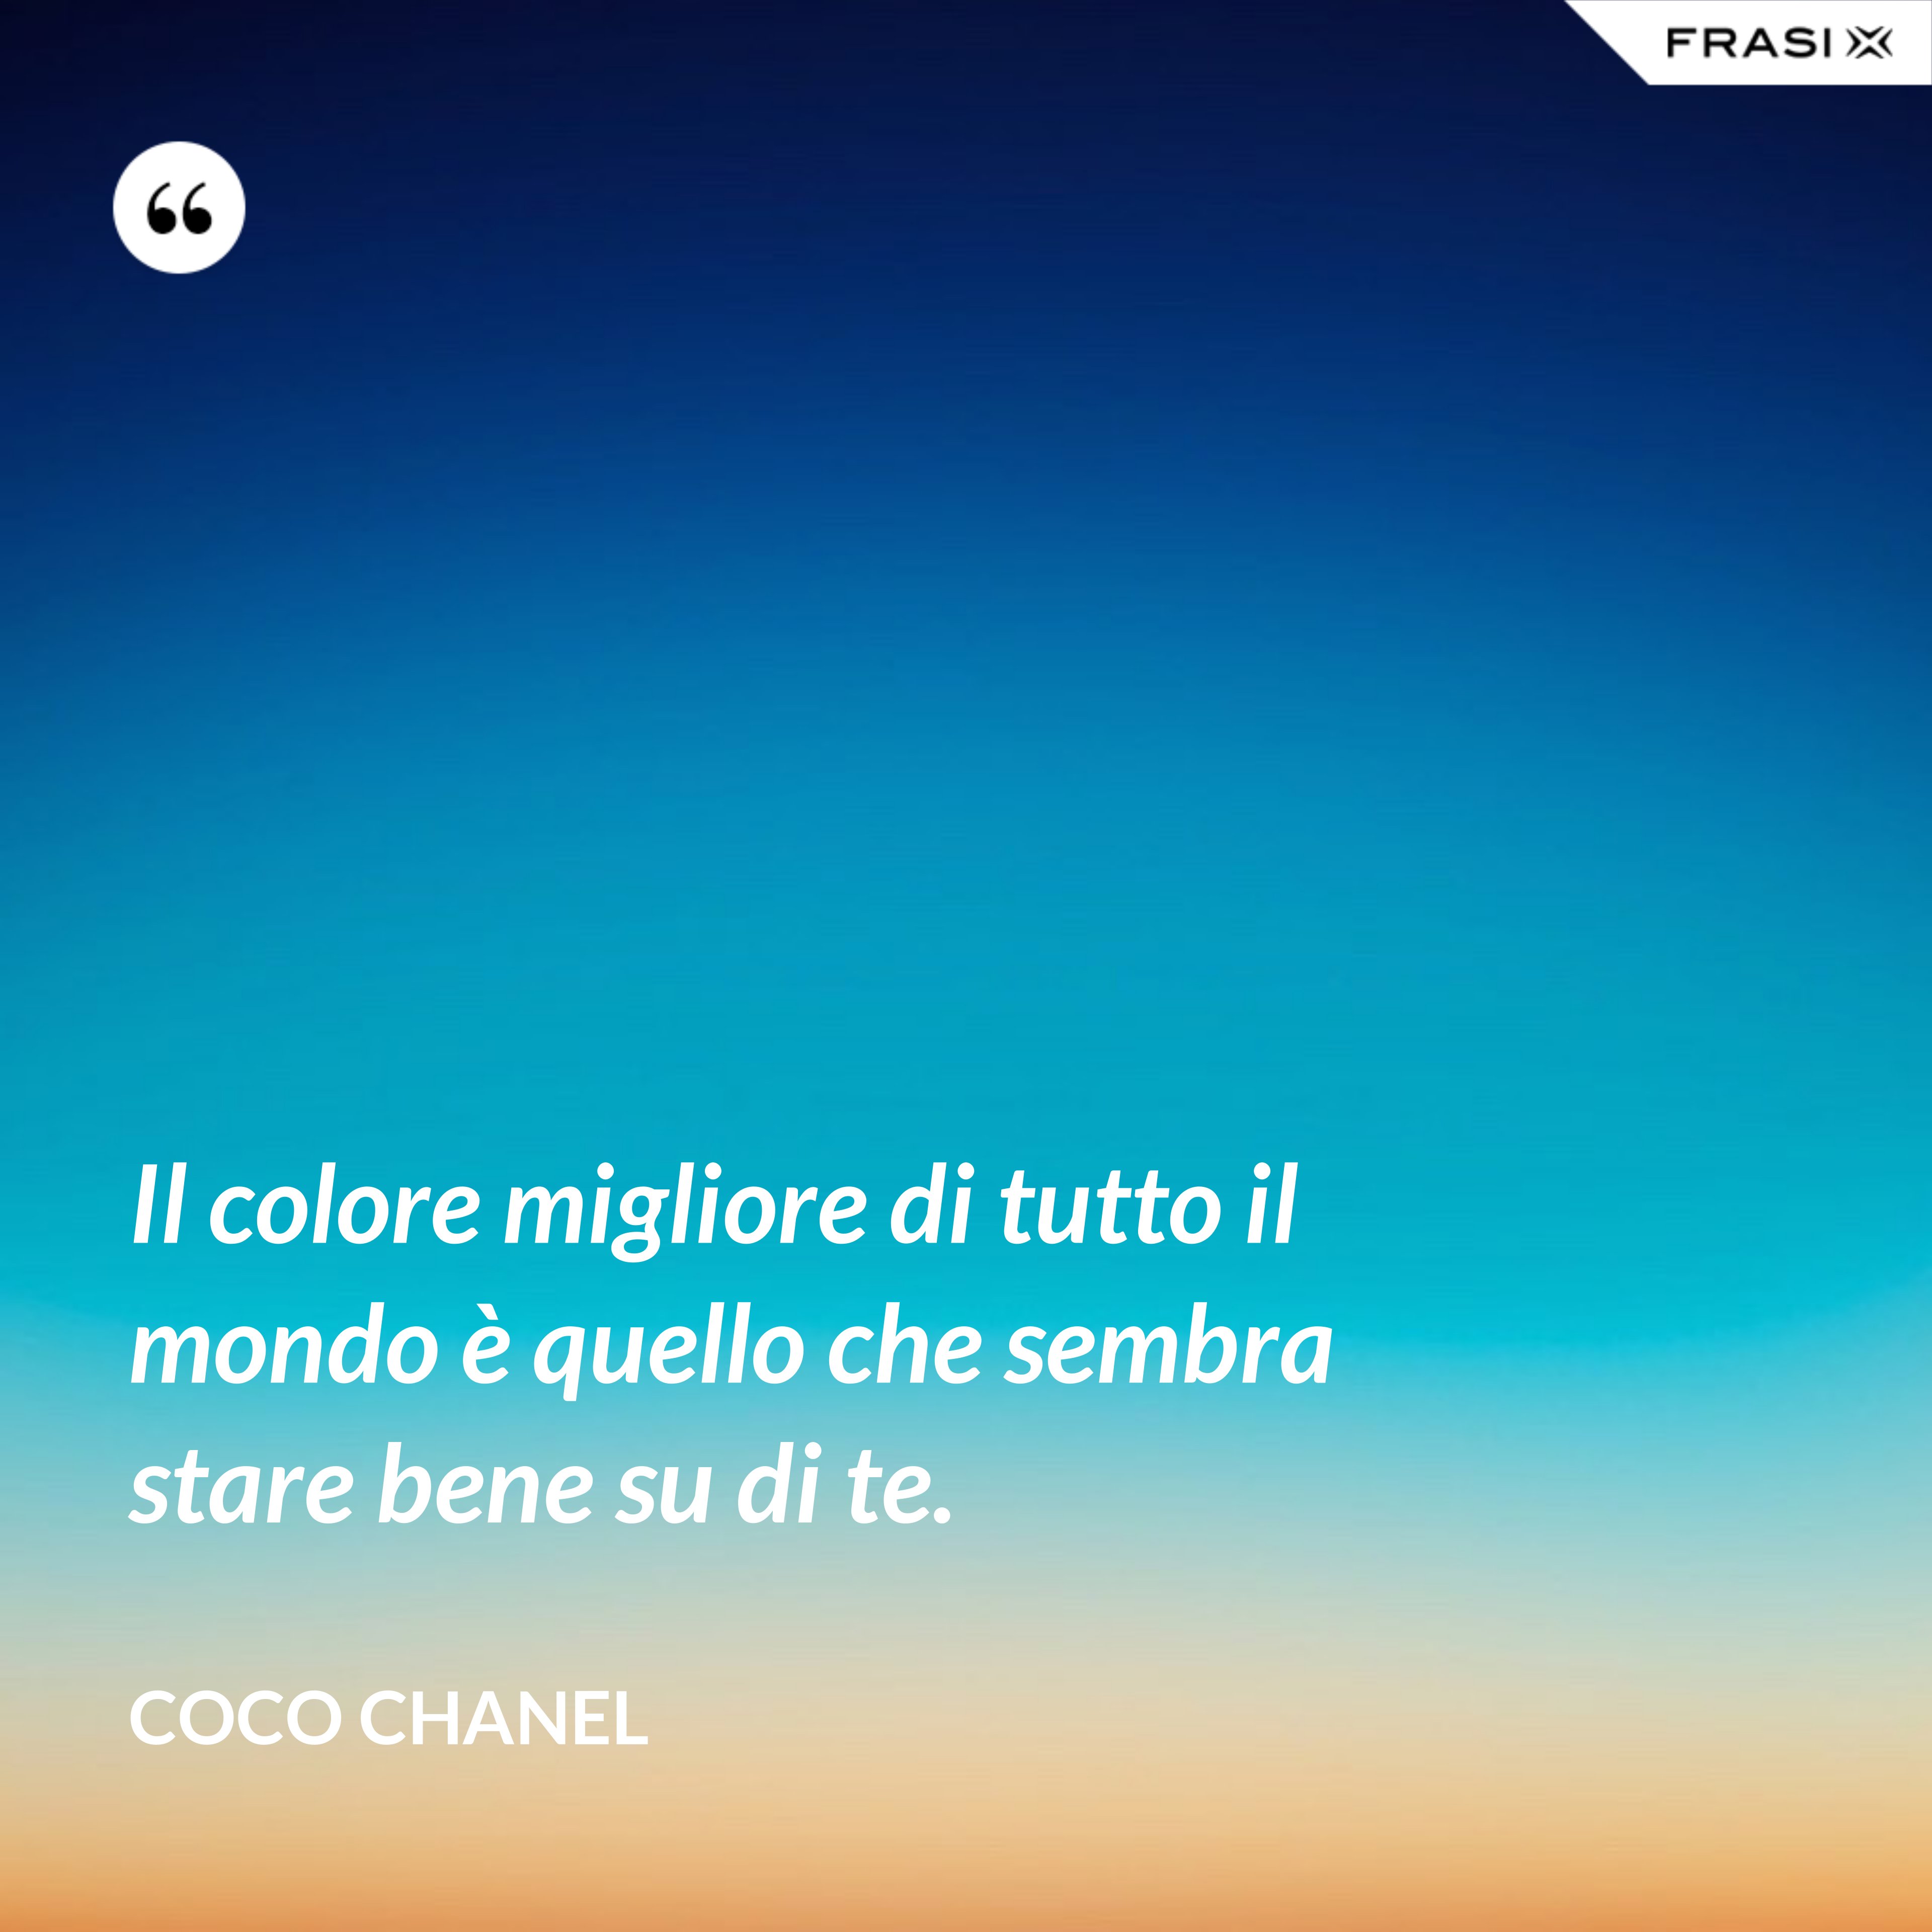 Il colore migliore di tutto il mondo è quello che sembra stare bene su di te. - Coco Chanel